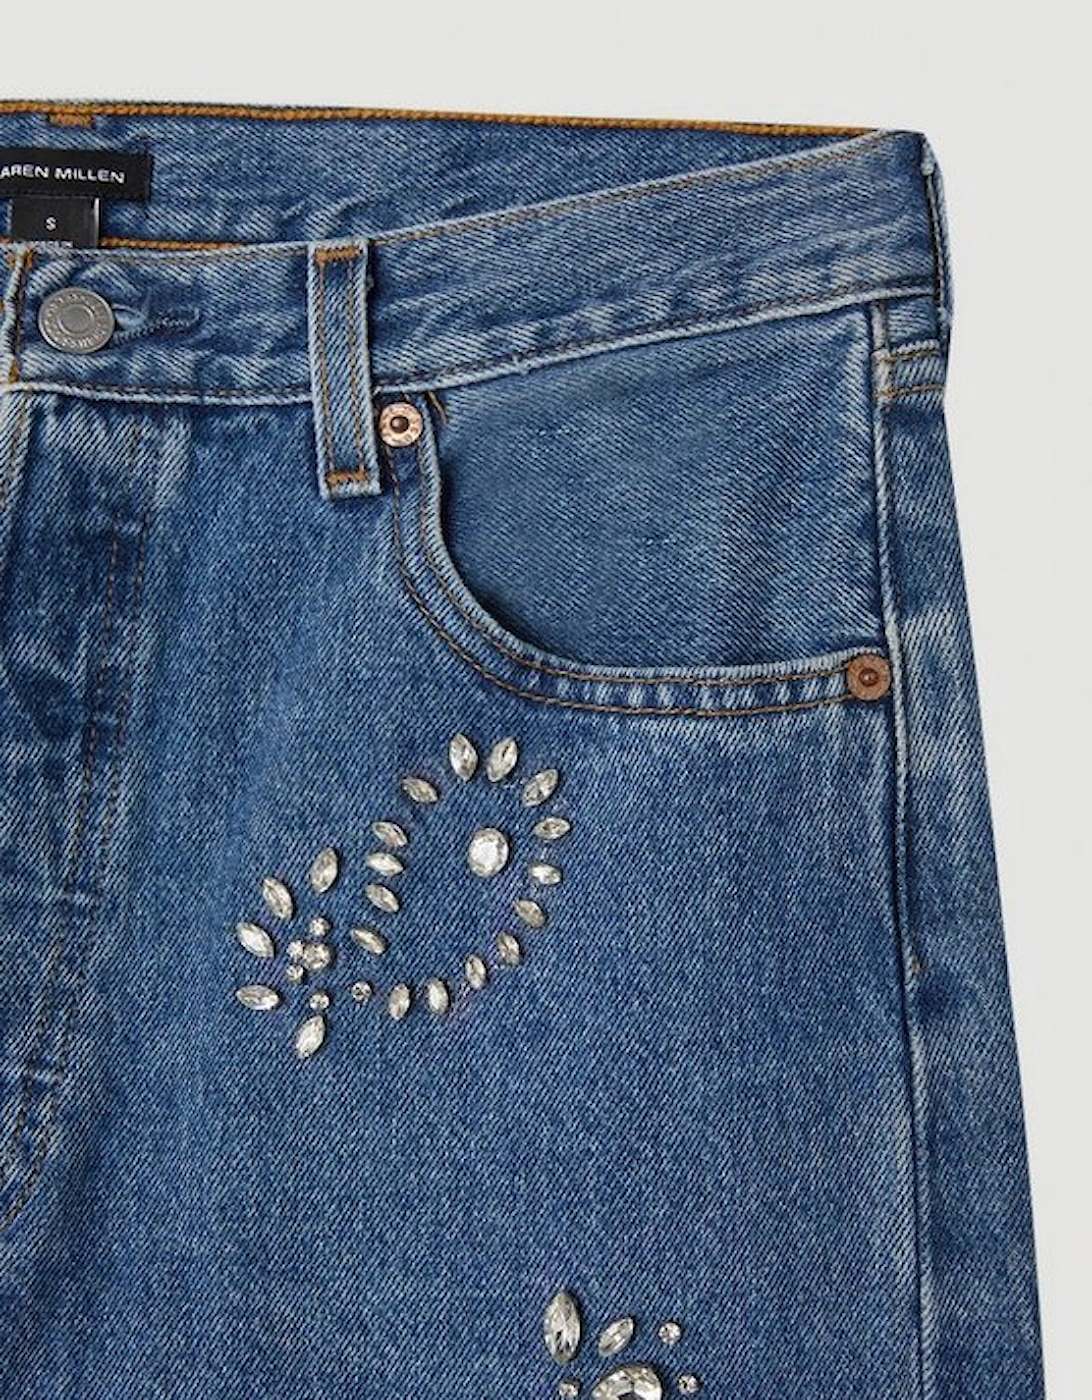 All Over Hand Embellished Vintage Jeans